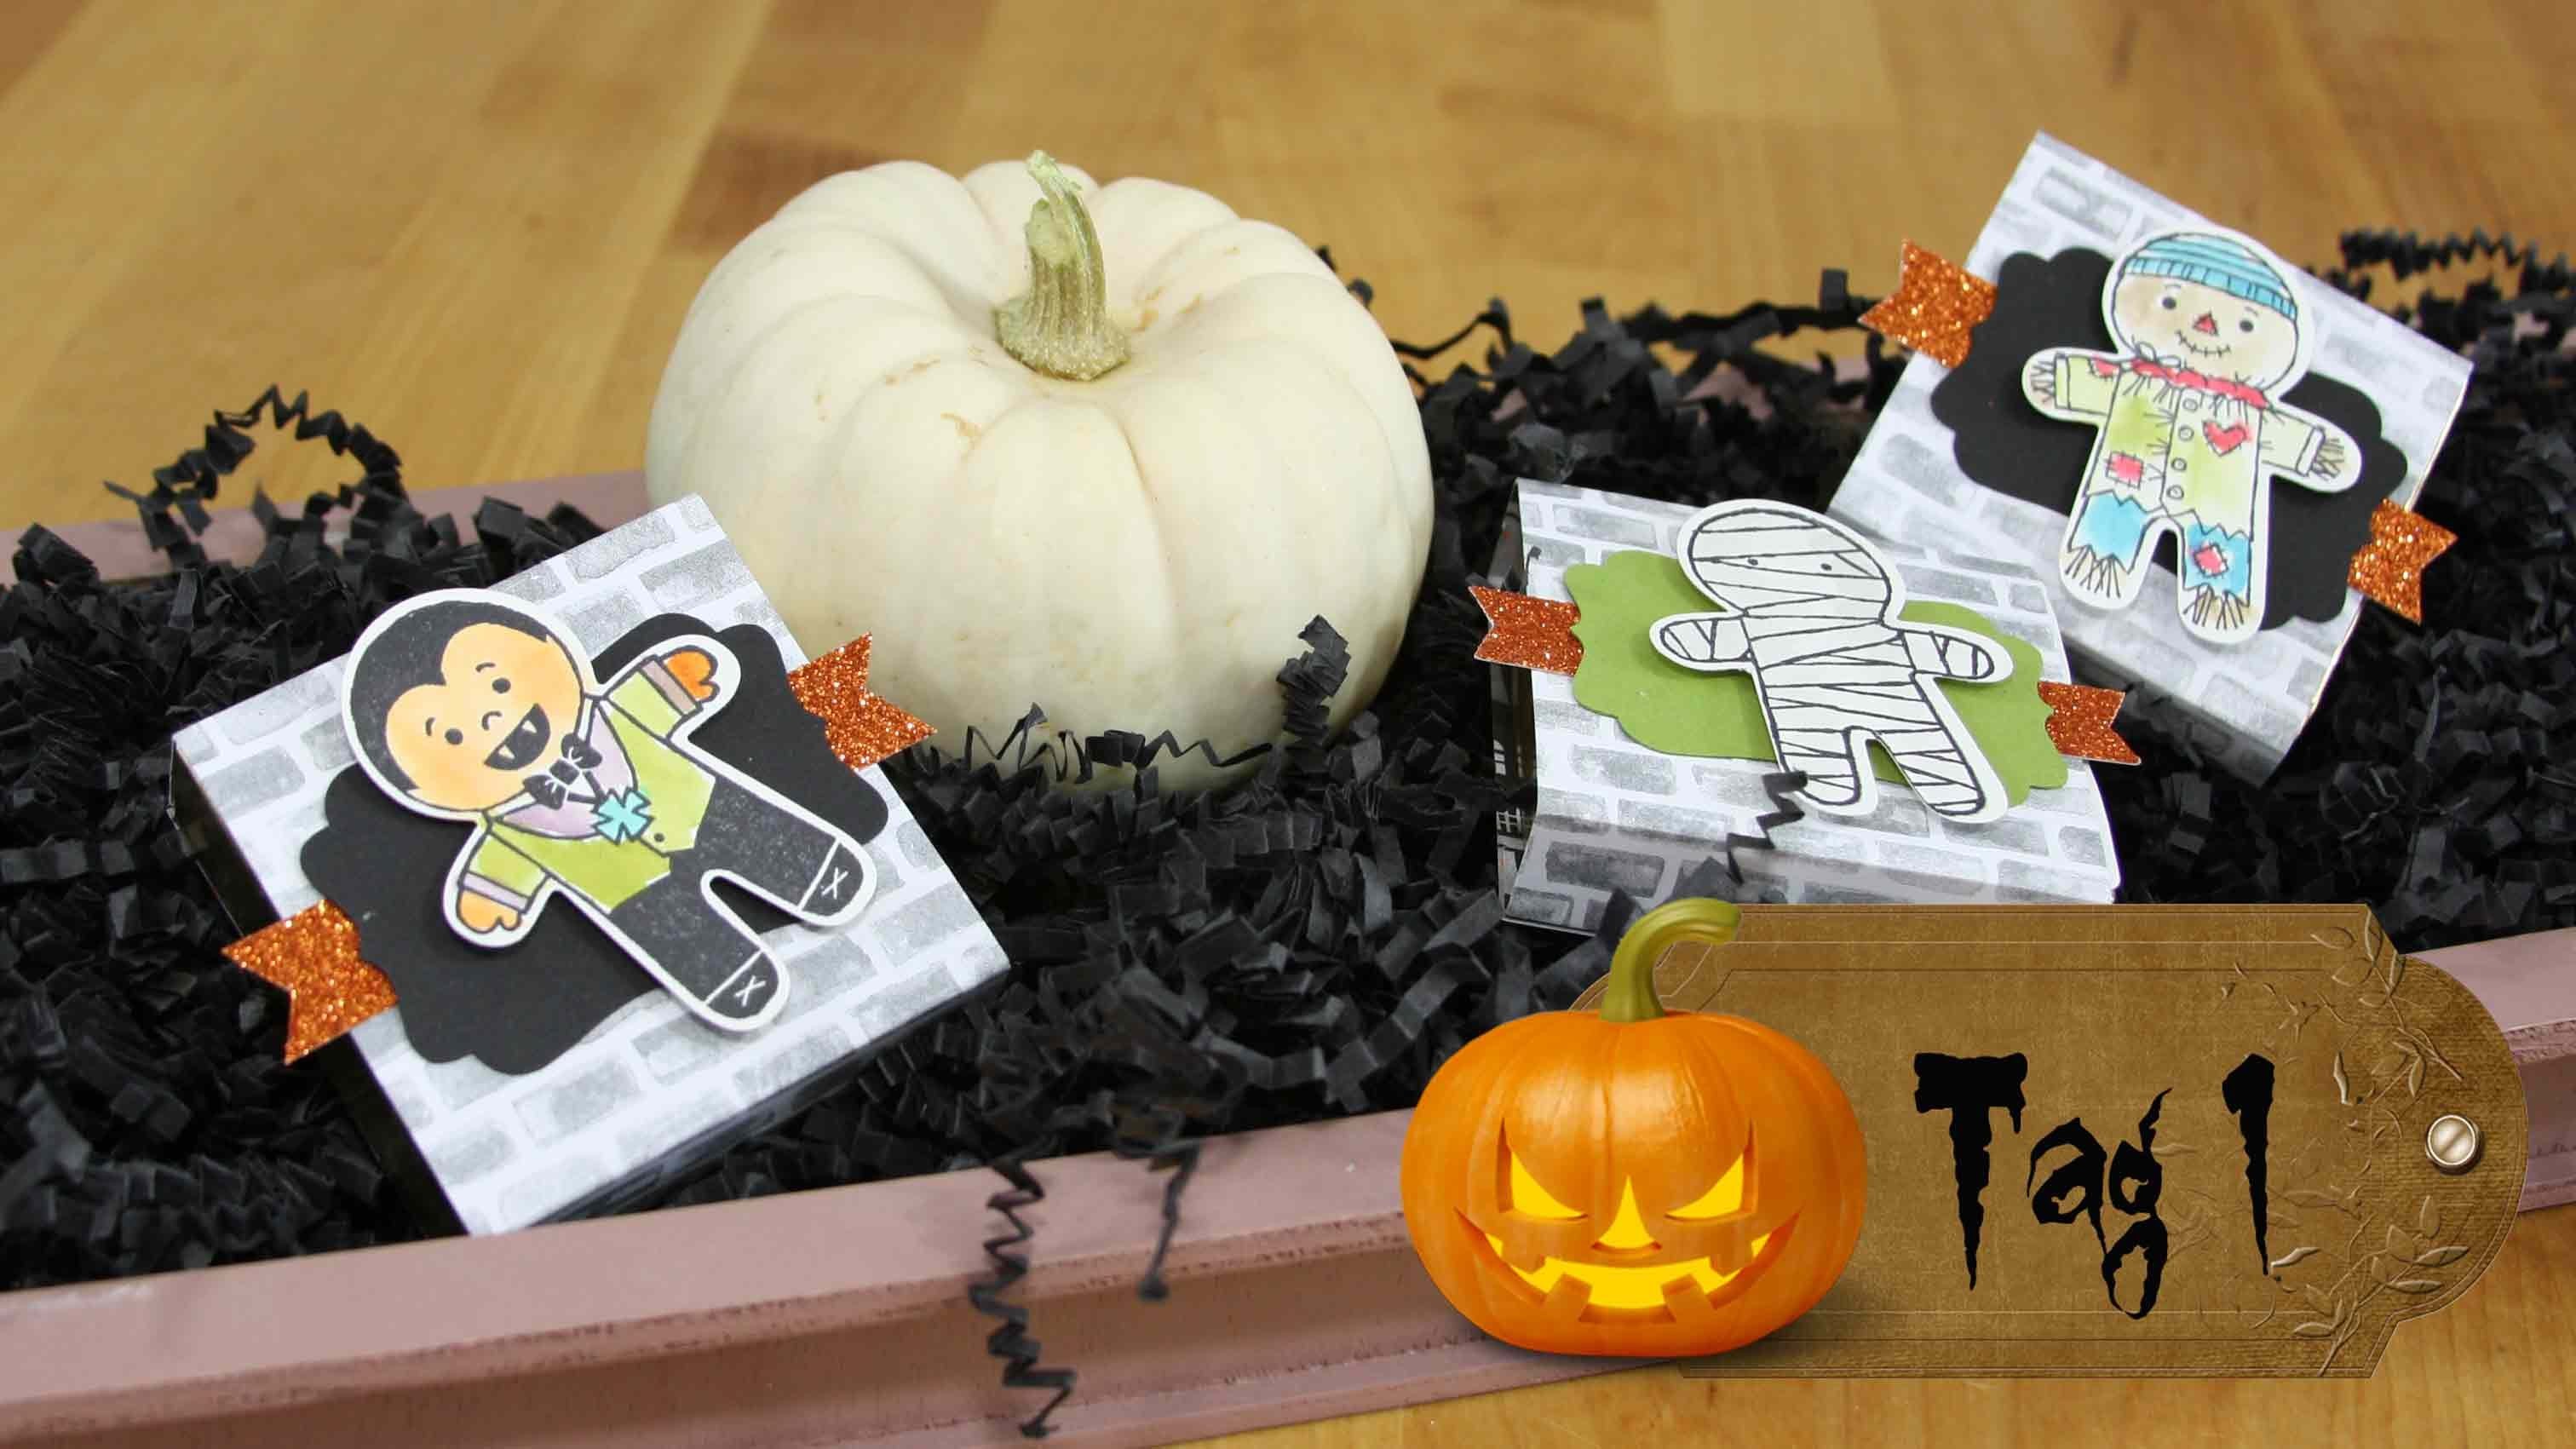 12 Tage Halloween #01 - Verpackungen mit Produkten von Stampin' Up!